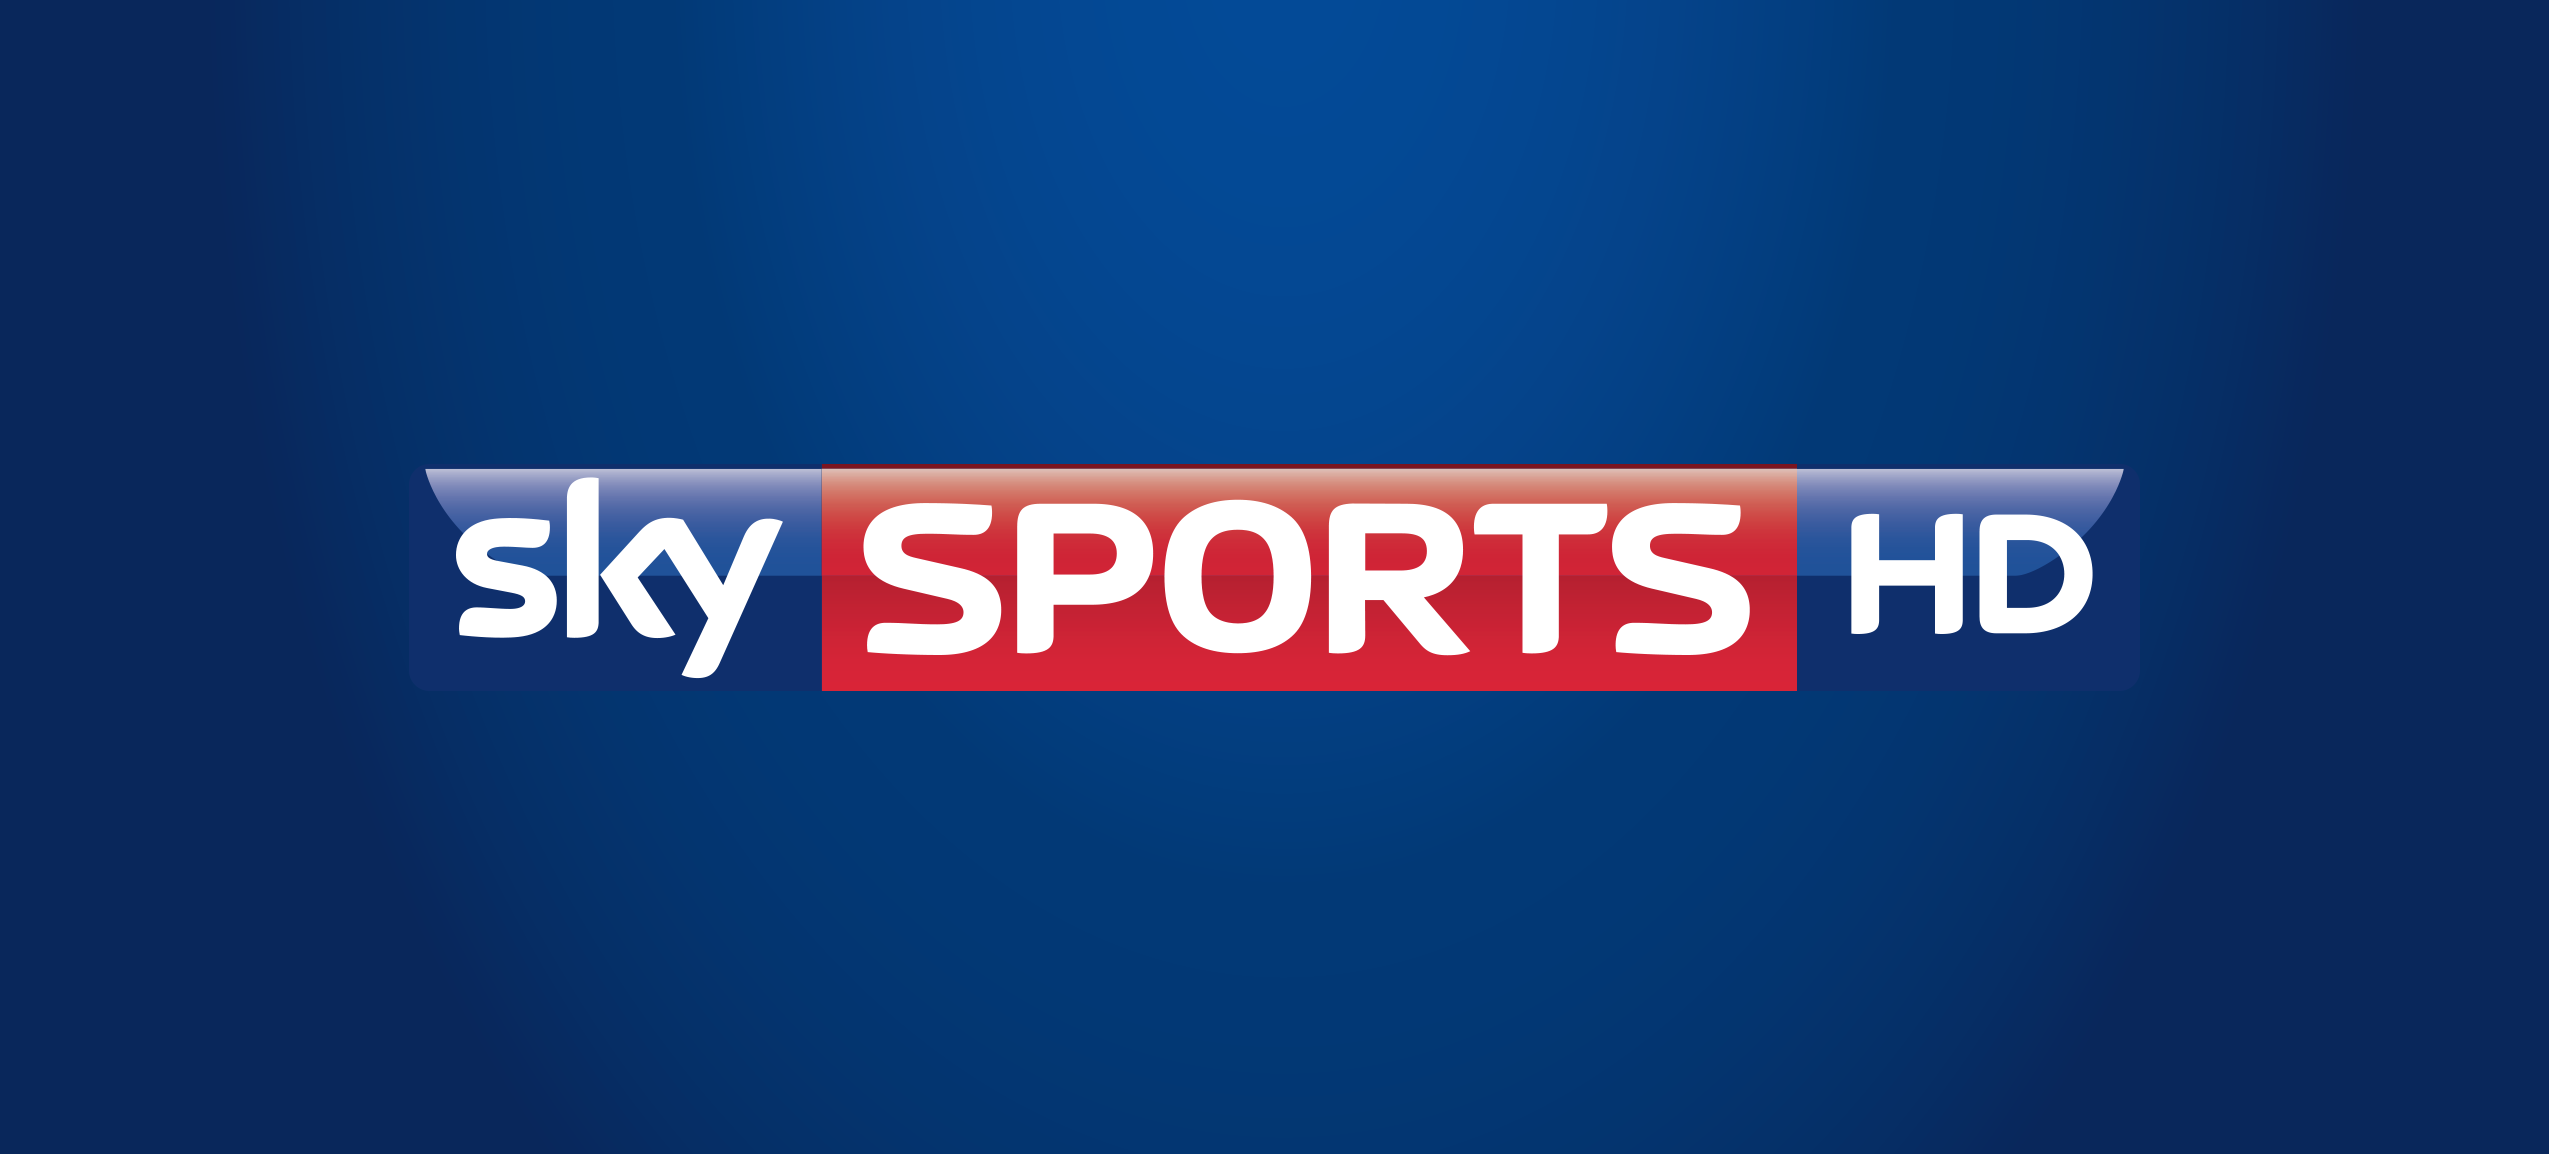 Sky sports live streaming. Sky Sport. Логотип Sky Sport. Каналы Sky Sports. Телеканал Sky Sports News логотип.